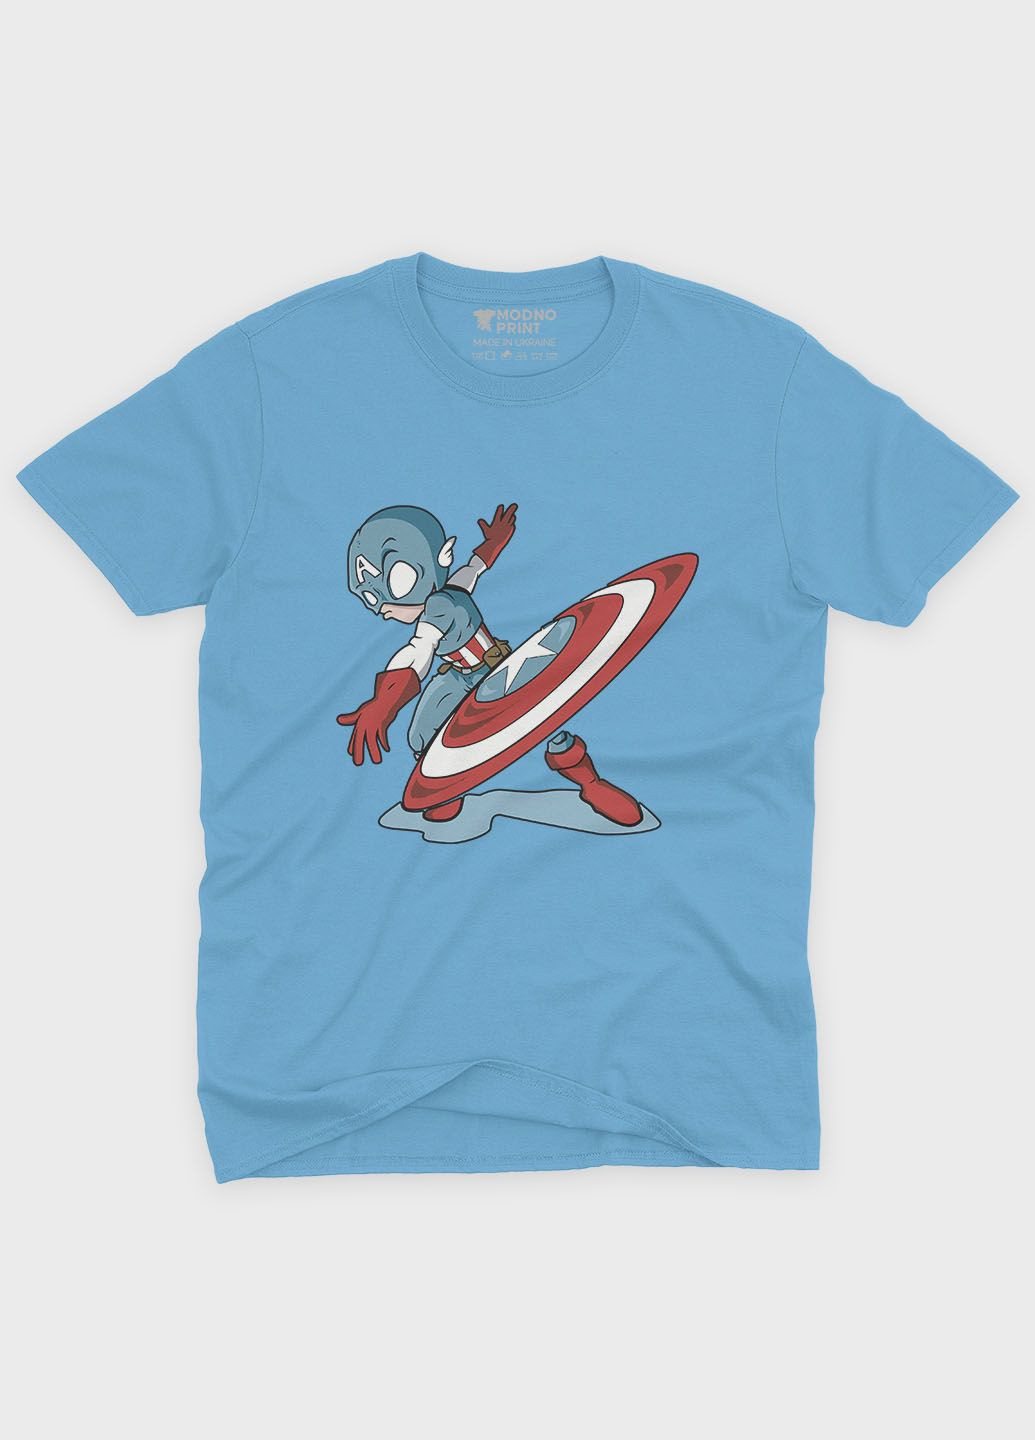 Блакитна демісезонна футболка для дівчинки з принтом супергероя - капітан америка (ts001-1-lbl-006-022-011-g) Modno